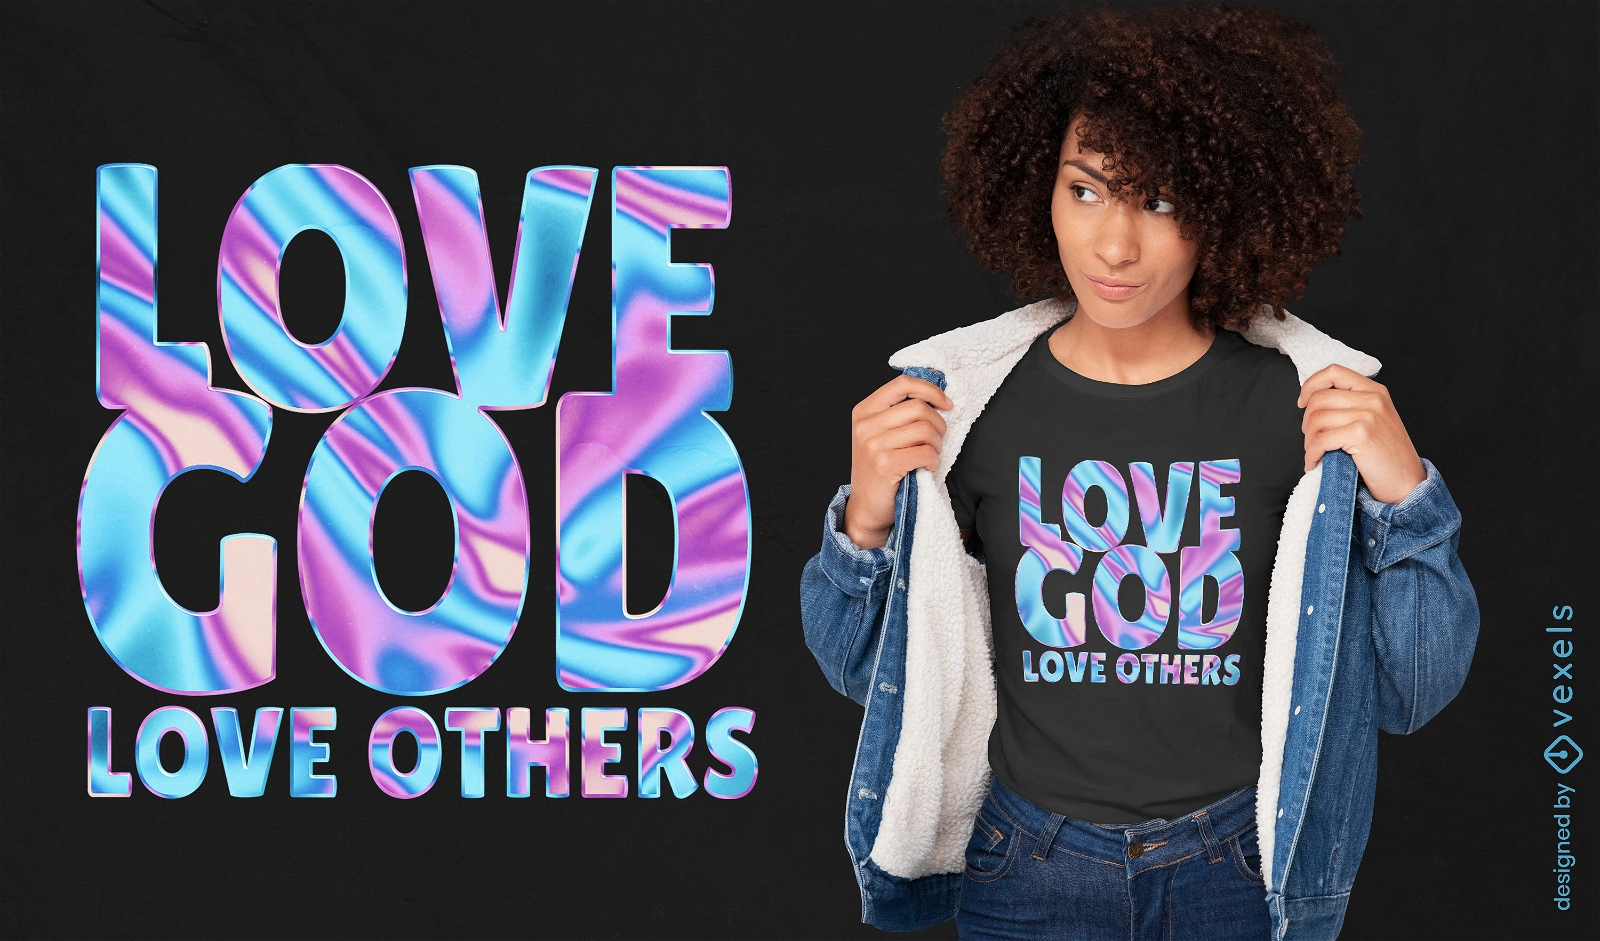 Design inspirador de camisetas com citações religiosas